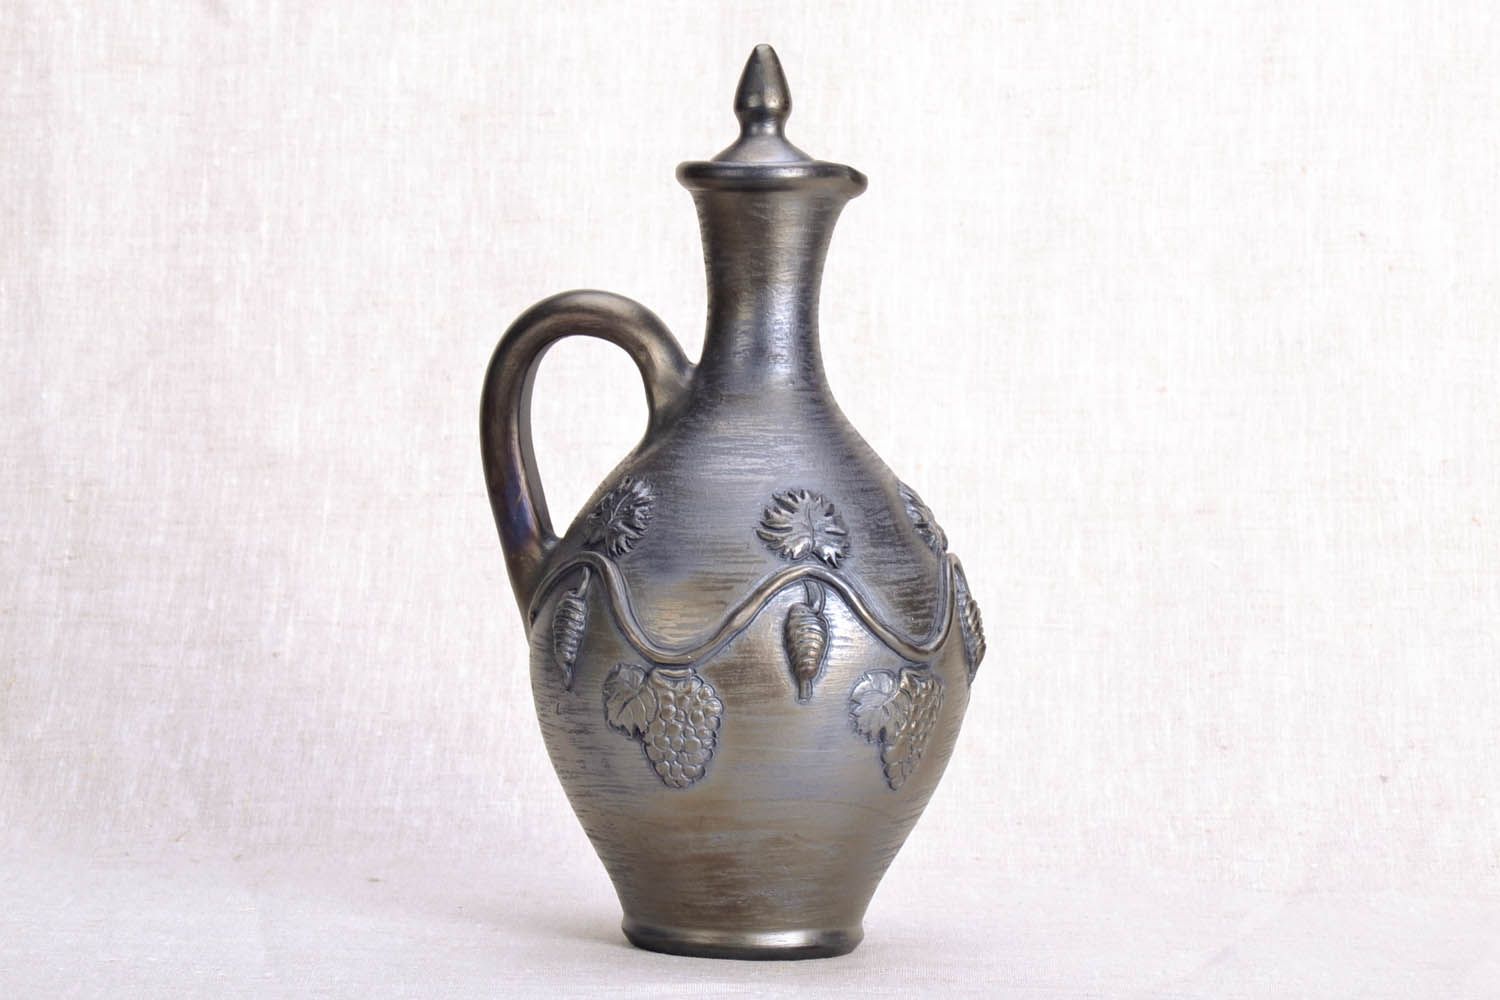 Jarro de argila com elementos moldados feito à mão louça de cerâmica decorativa artesanal foto 2